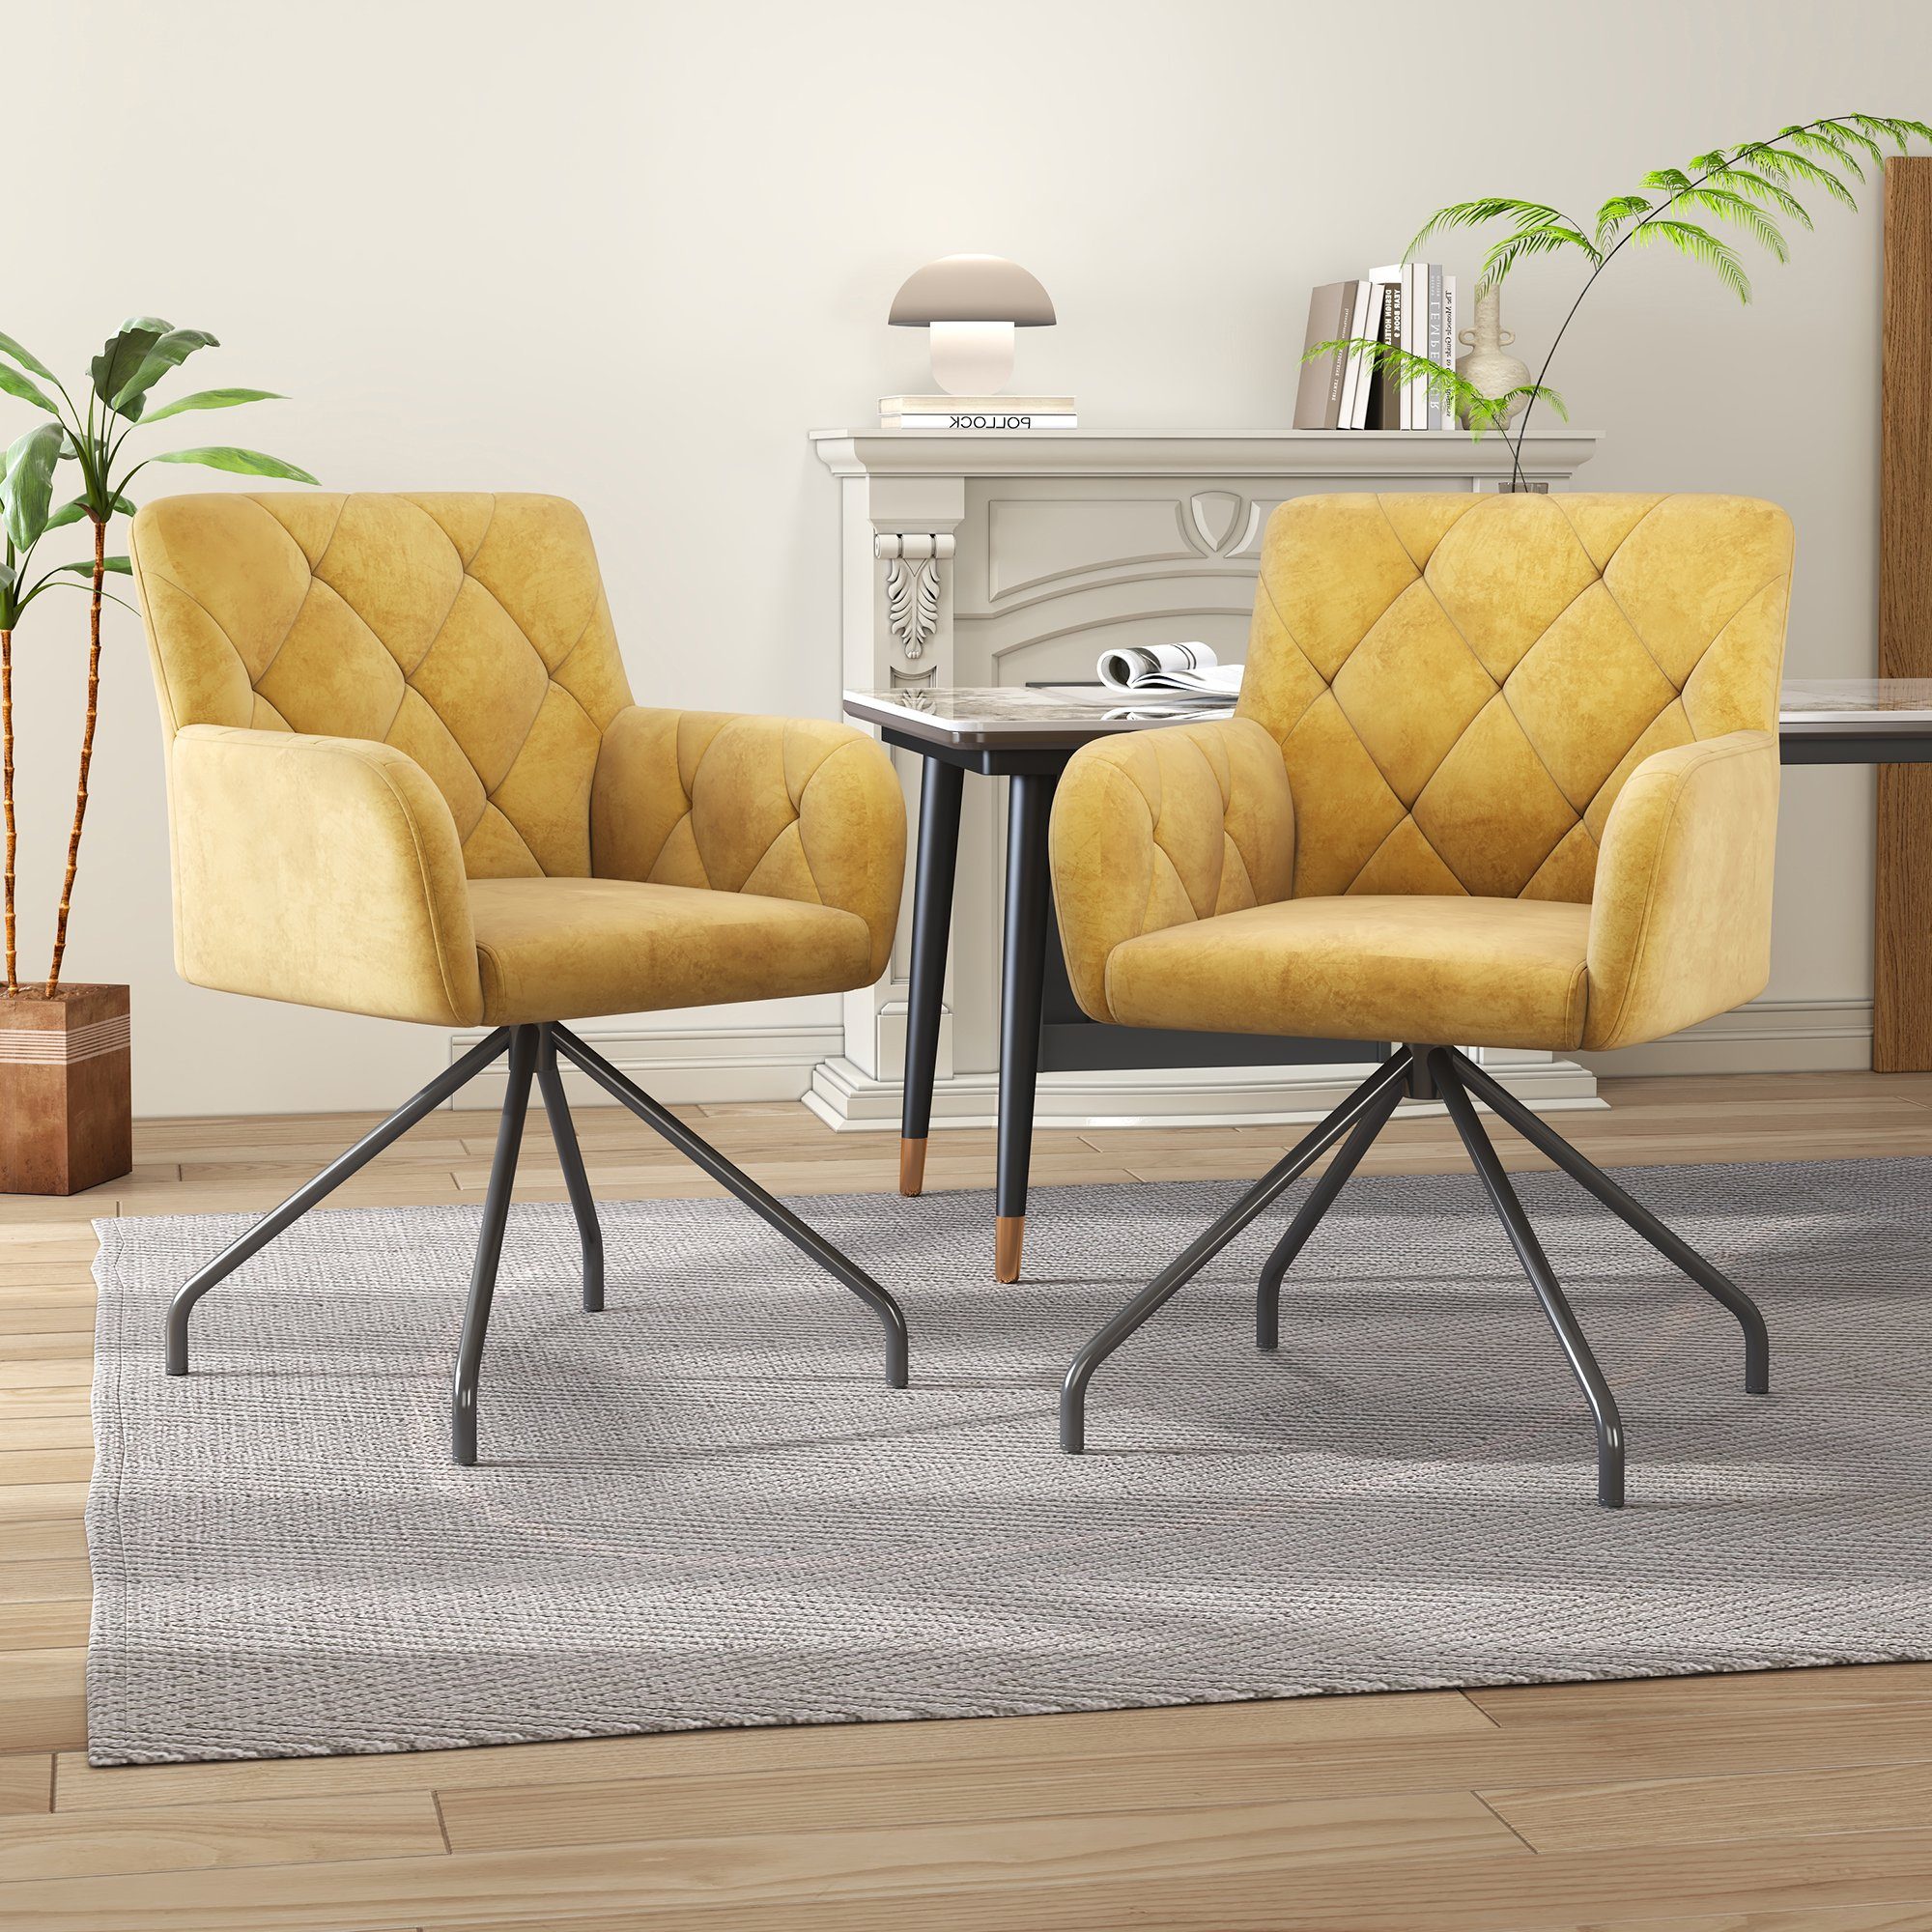 Odikalo Esszimmerstuhl 2er Set Gepolstert Sessel Wohnzimmer 4 Metallbeinen Samt grau/gelb | Stühle